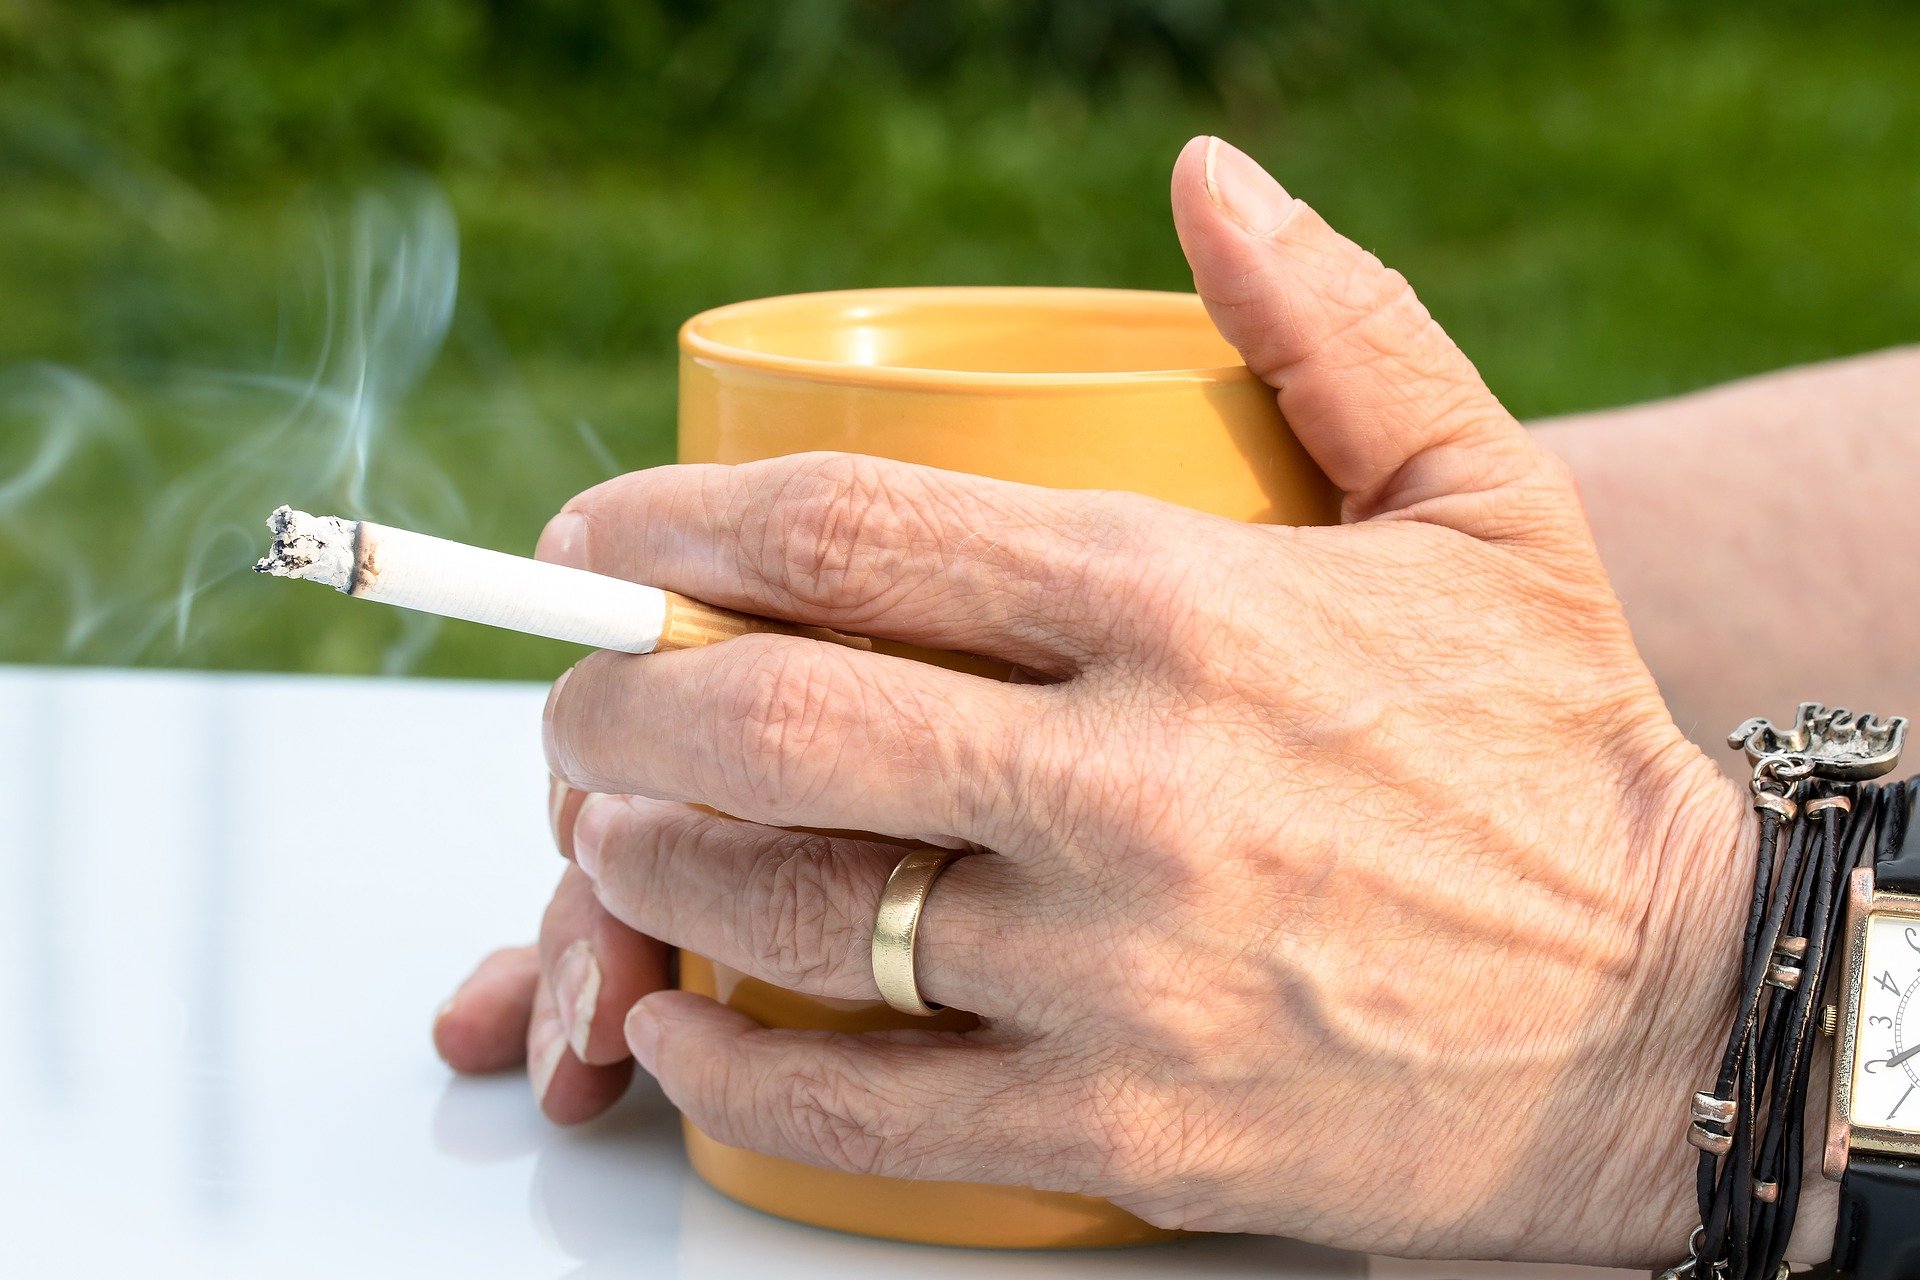 cigarette 2367456 1920.jpg?resize=412,232 - Il n'est jamais trop tard pour arrêter de fumer : Selon une étude, les tissus pulmonaires pourraient redevenir normaux !